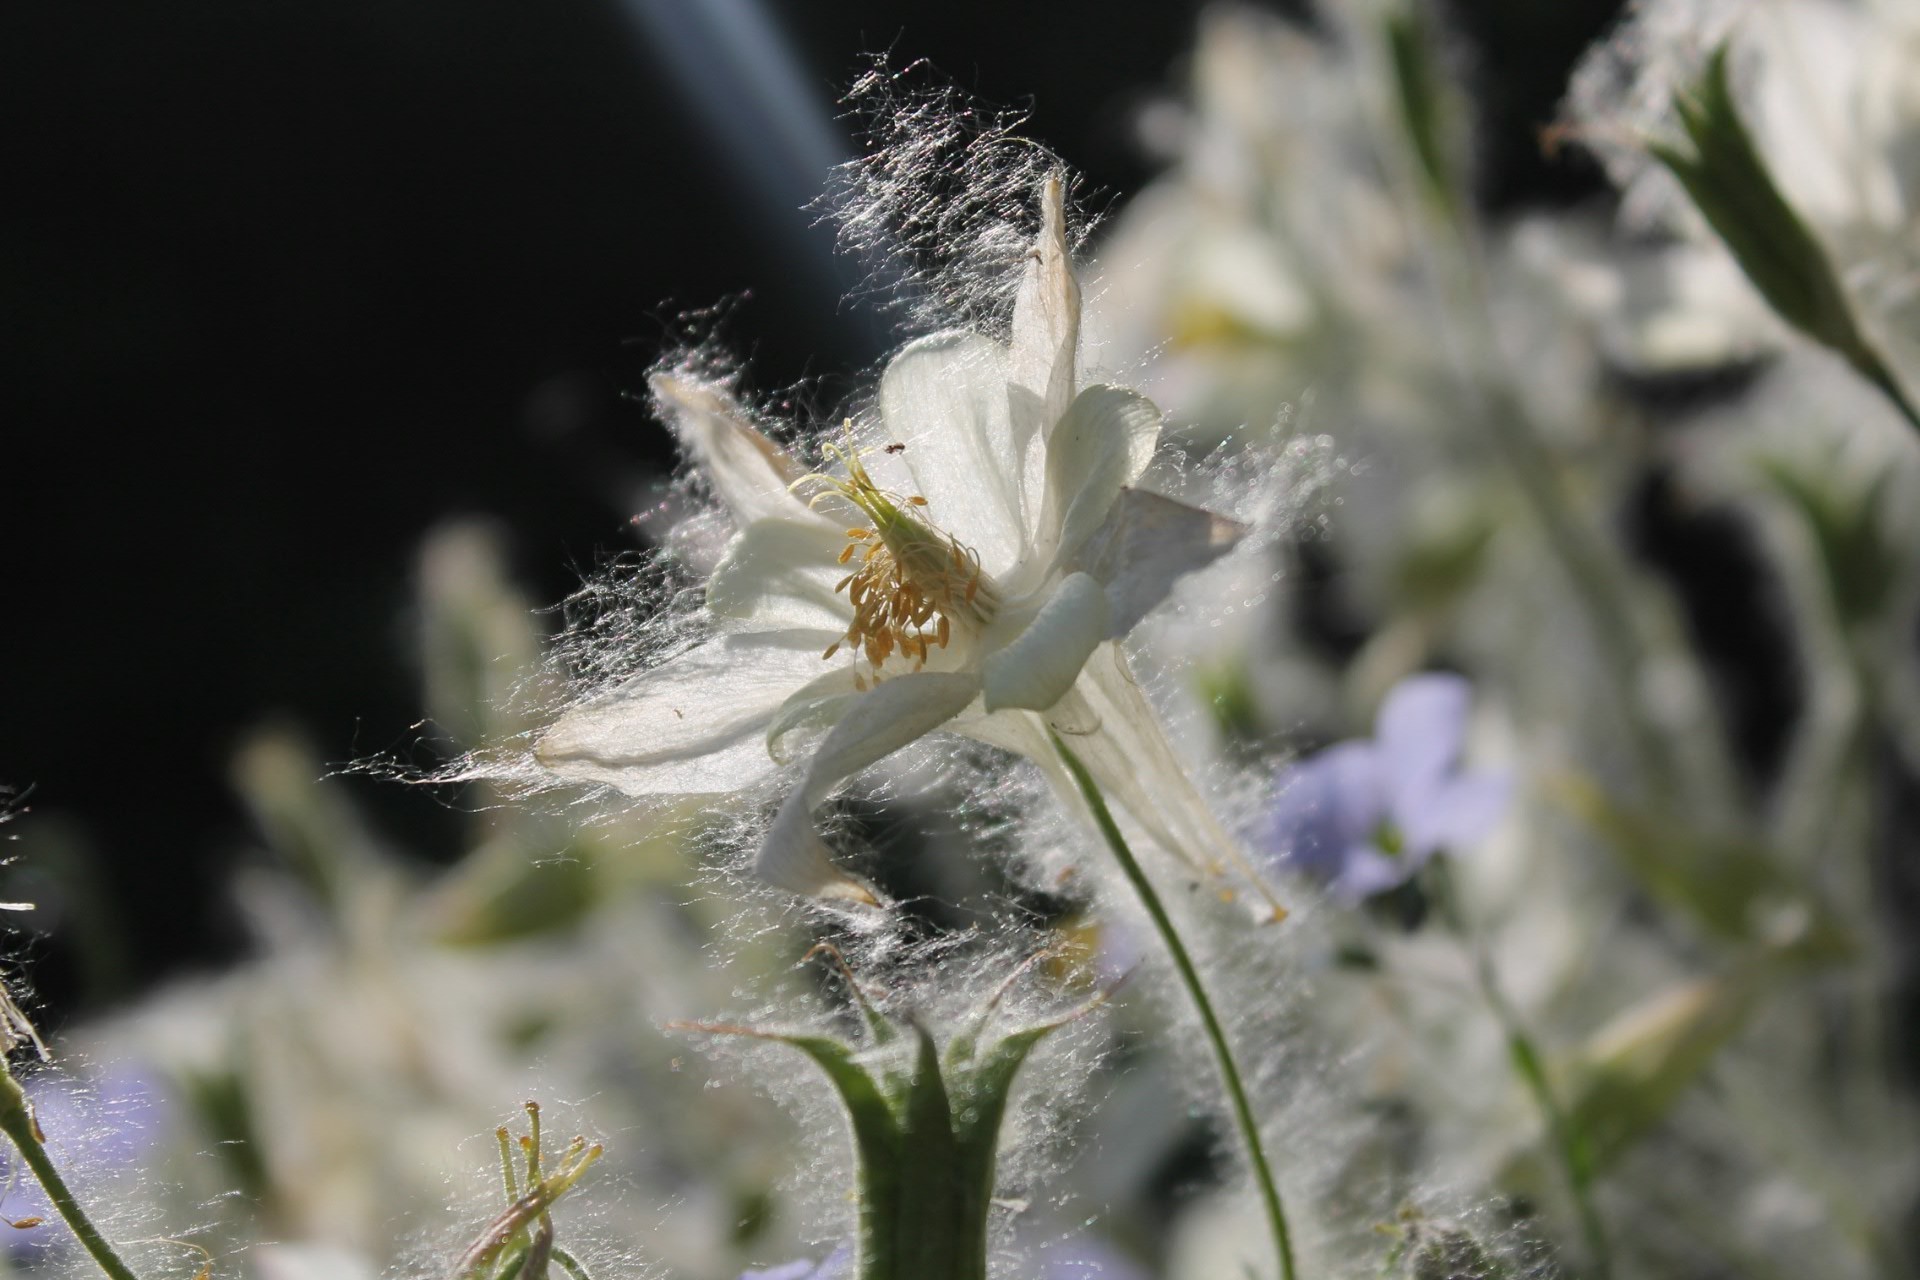 цветы природа цветок на открытом воздухе флора насекомое сад крупным планом лето трава цвет лист паук дикий хорошую погоду блюминг размытость